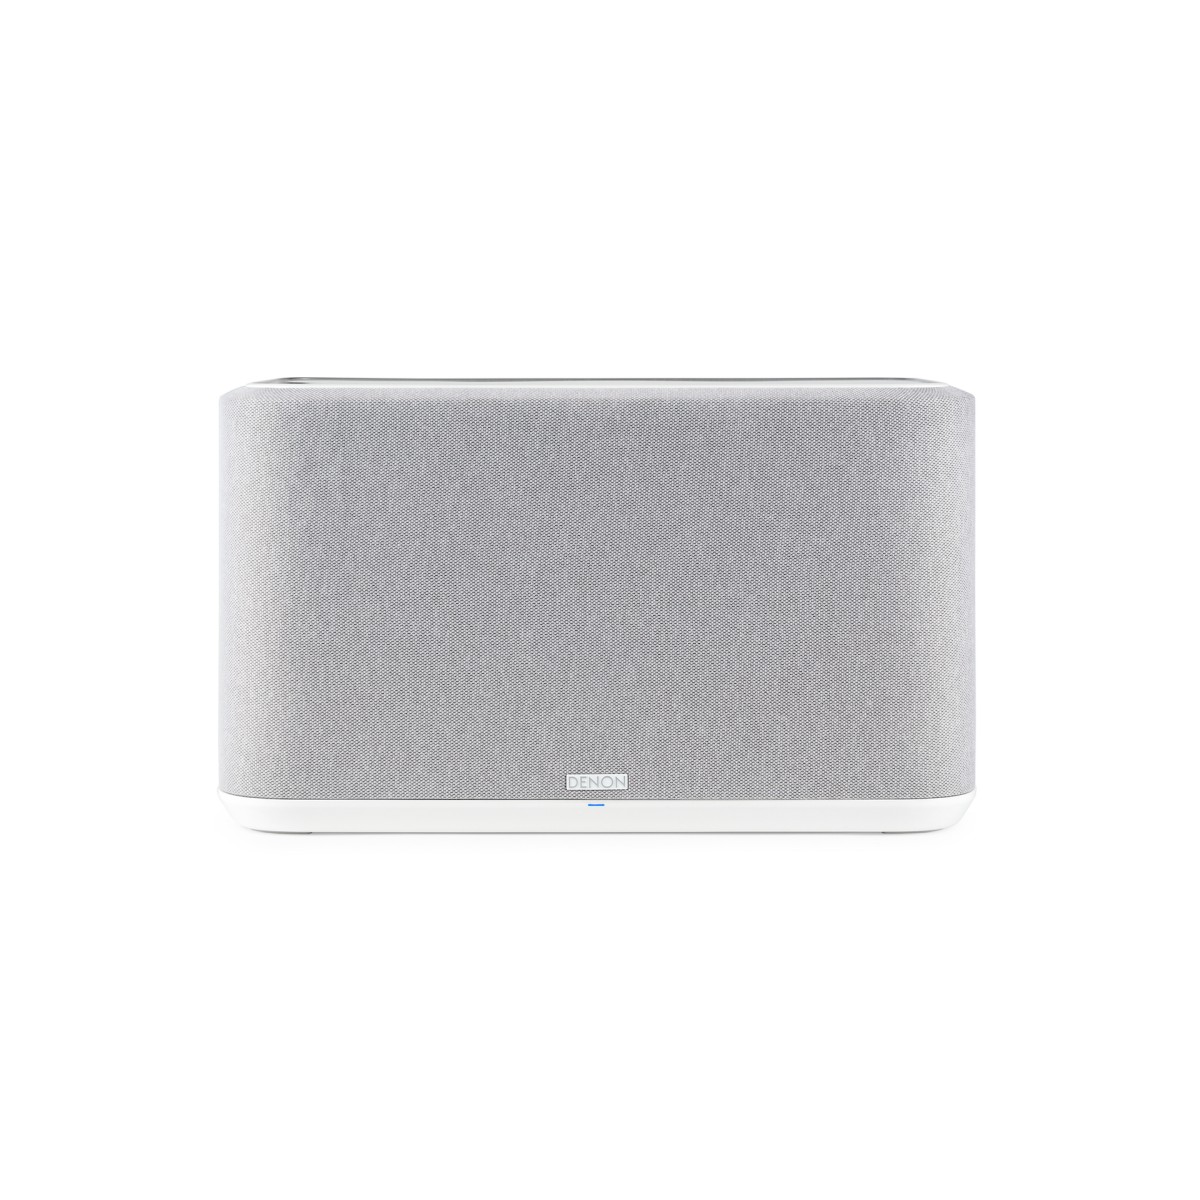 Hier sehen Sie den Artikel Home 350 Wireless Speaker white aus der Kategorie Wireless Lautsprecher. Dieser Artikel ist erhältlich bei cebrands.ch